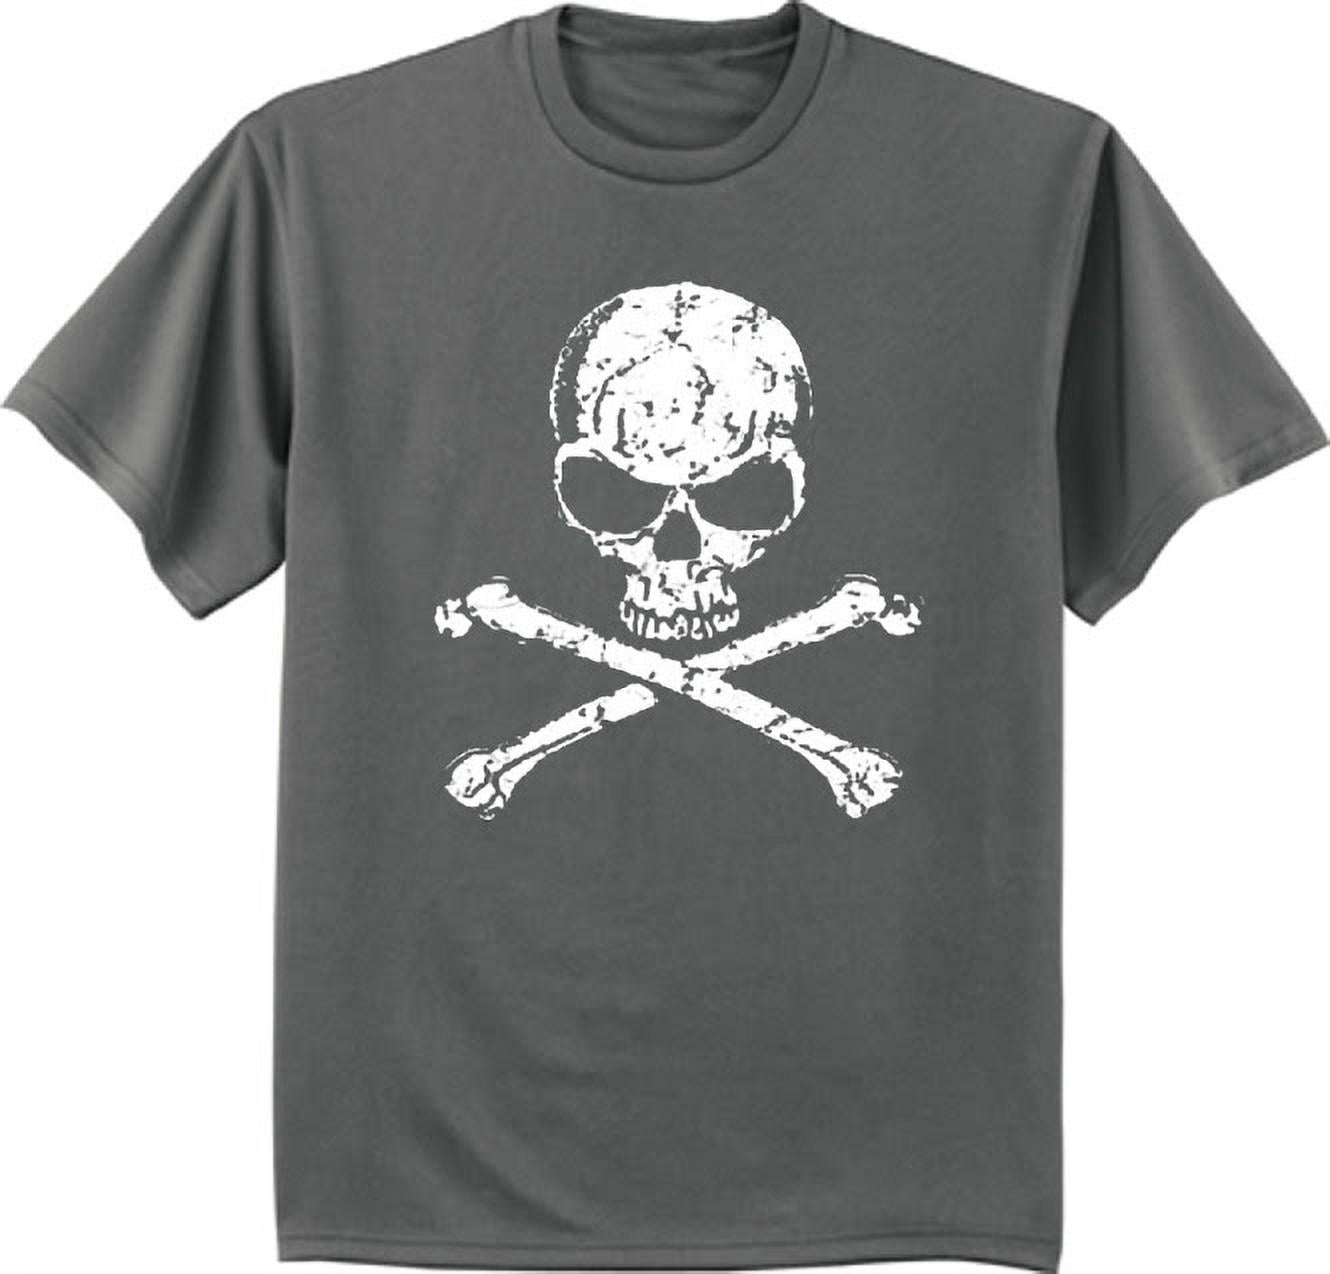 skull and crossbones t-shirt graphic men - Walmart.com